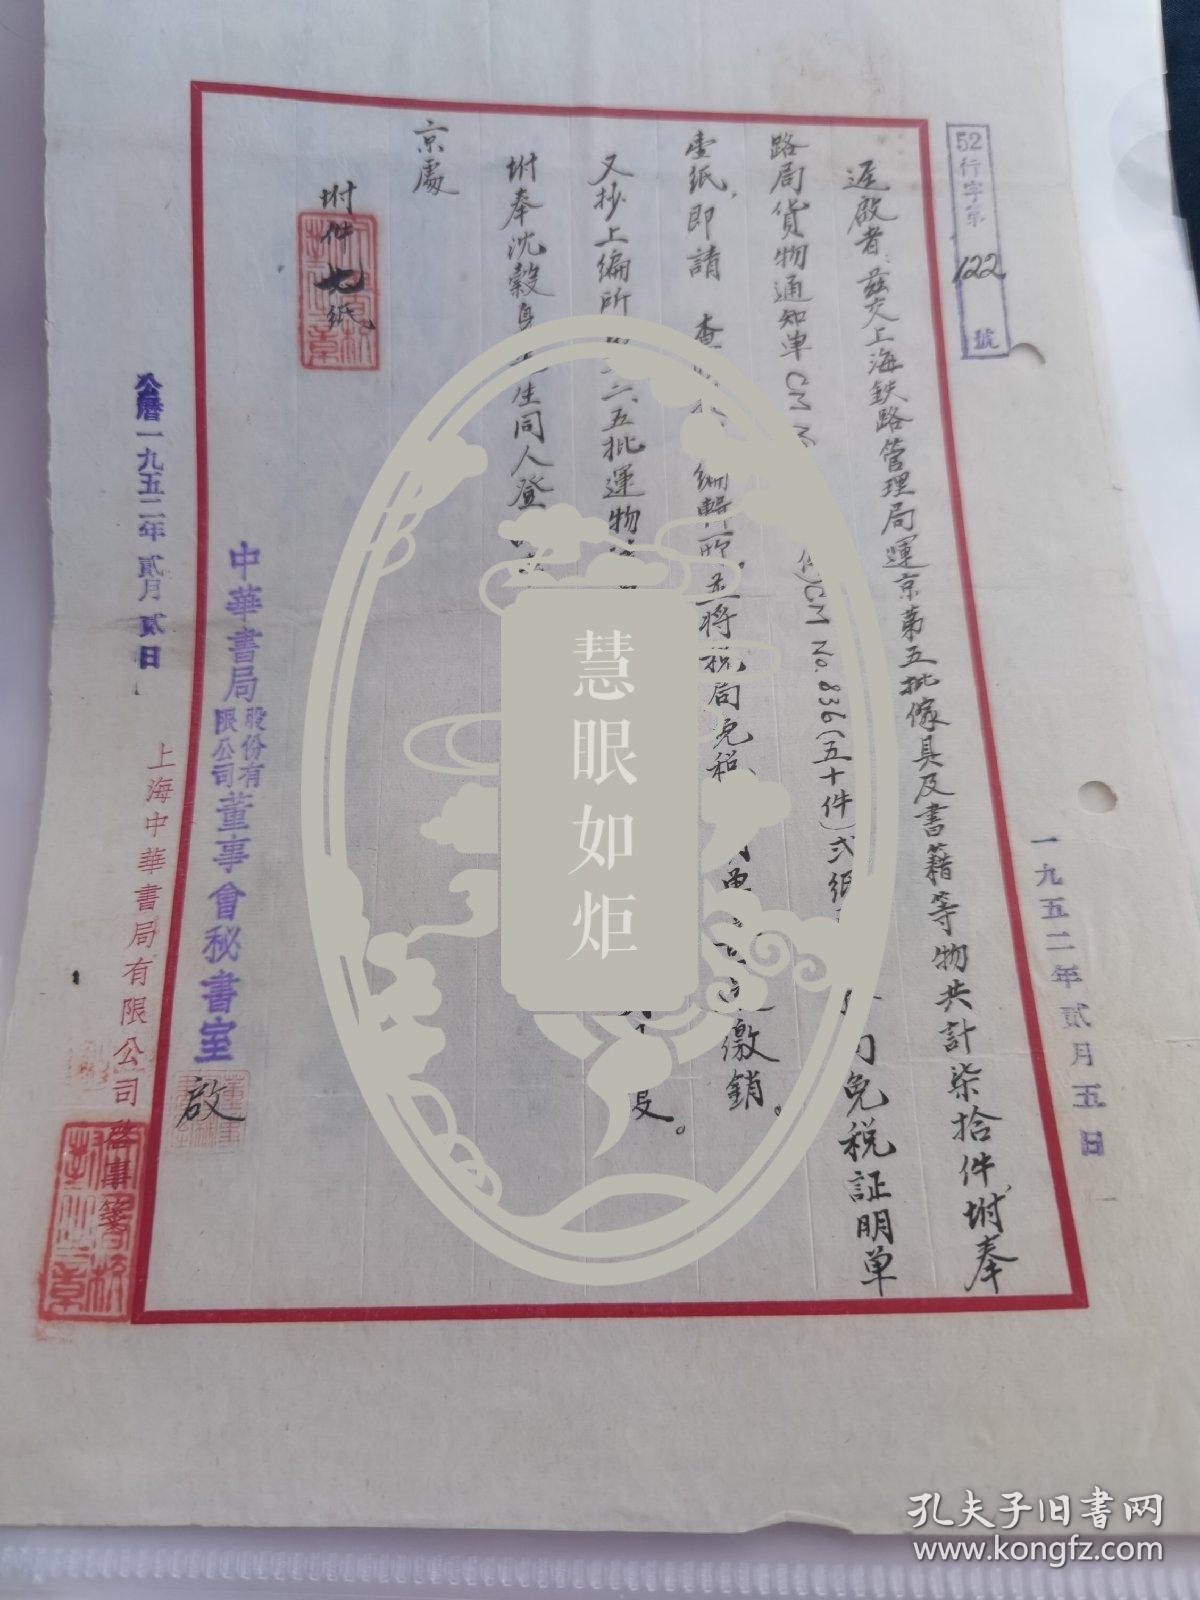 1952年中华书局毛笔信札1页